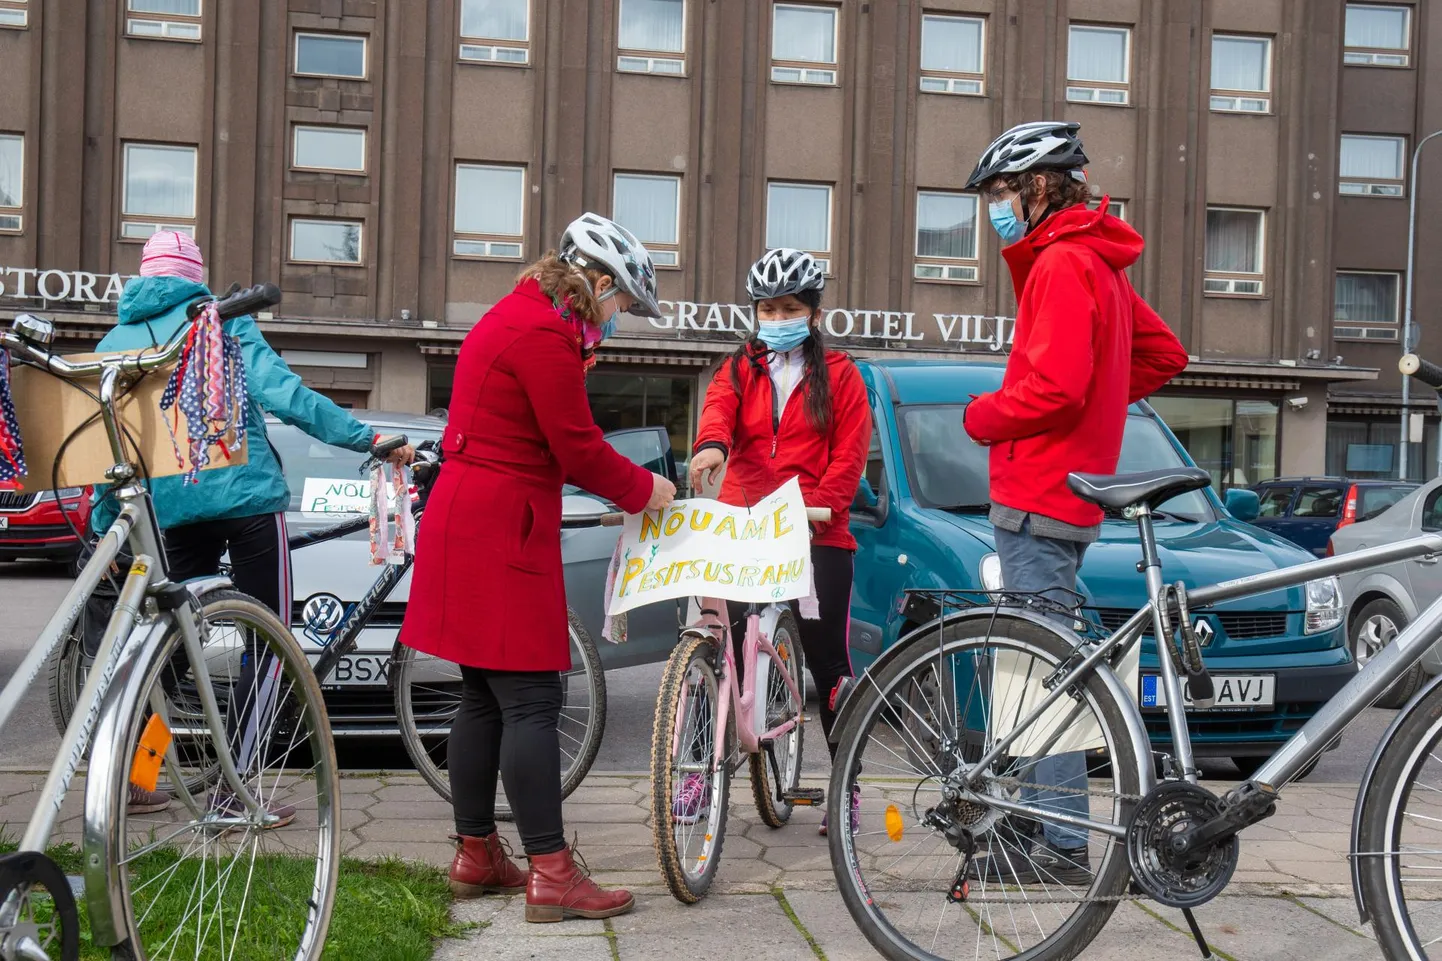 Lindude pesitsusrahu nõuti Viljandis jalgratastel.
 